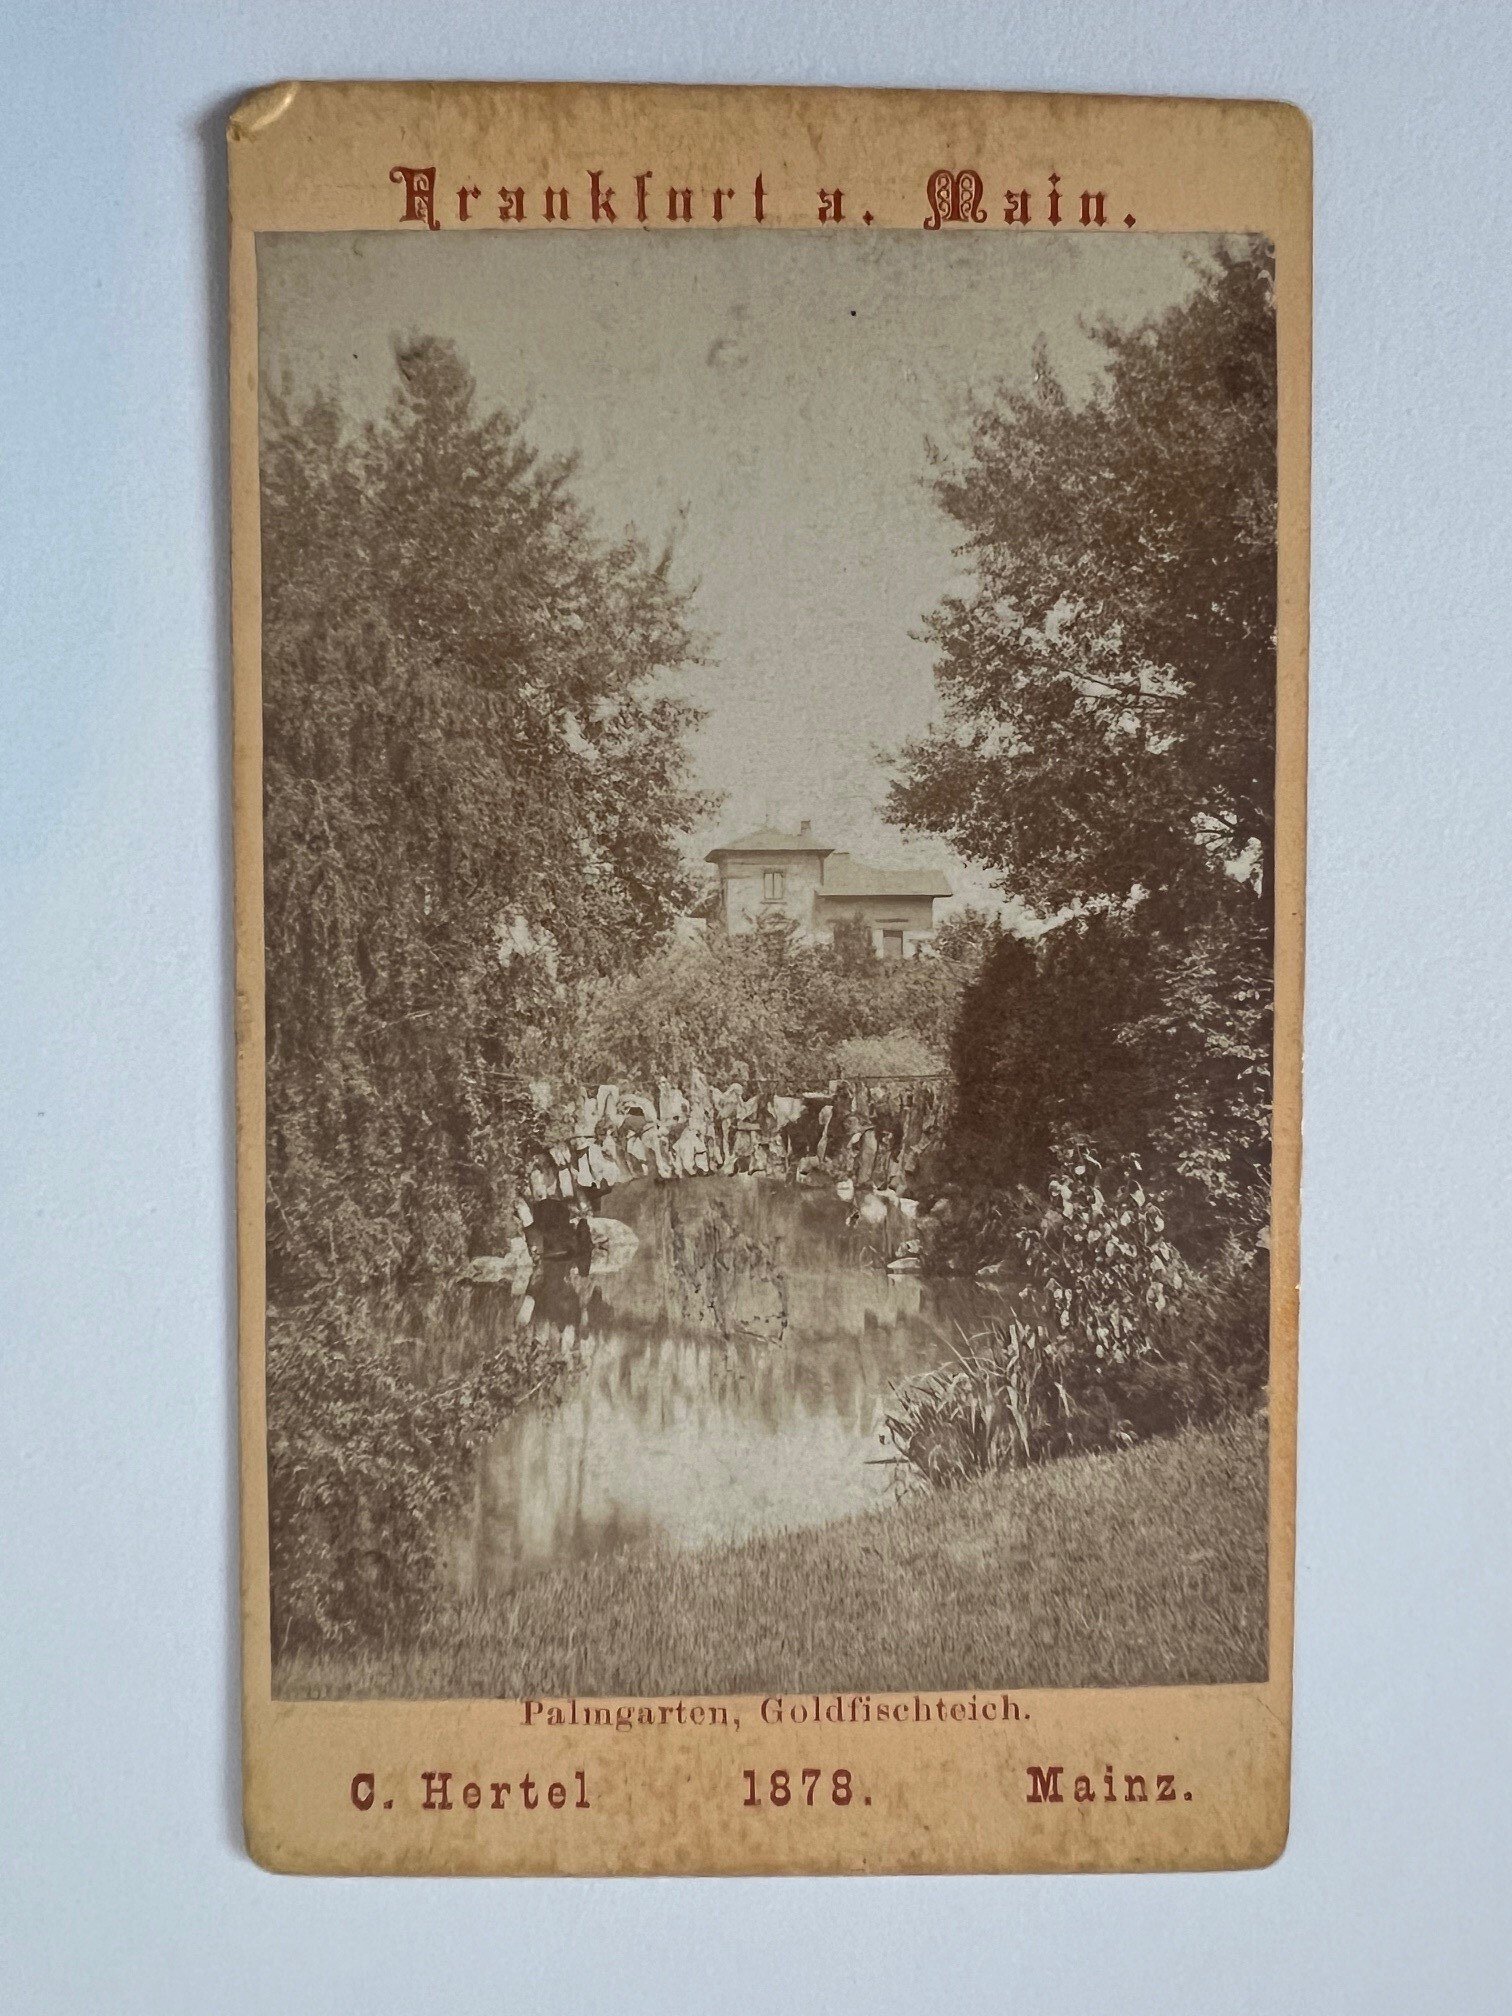 CdV, Carl Hertel, Frankfurt, Palmgarten, Goldfischteich, 1878. (Taunus-Rhein-Main - Regionalgeschichtliche Sammlung Dr. Stefan Naas CC BY-NC-SA)